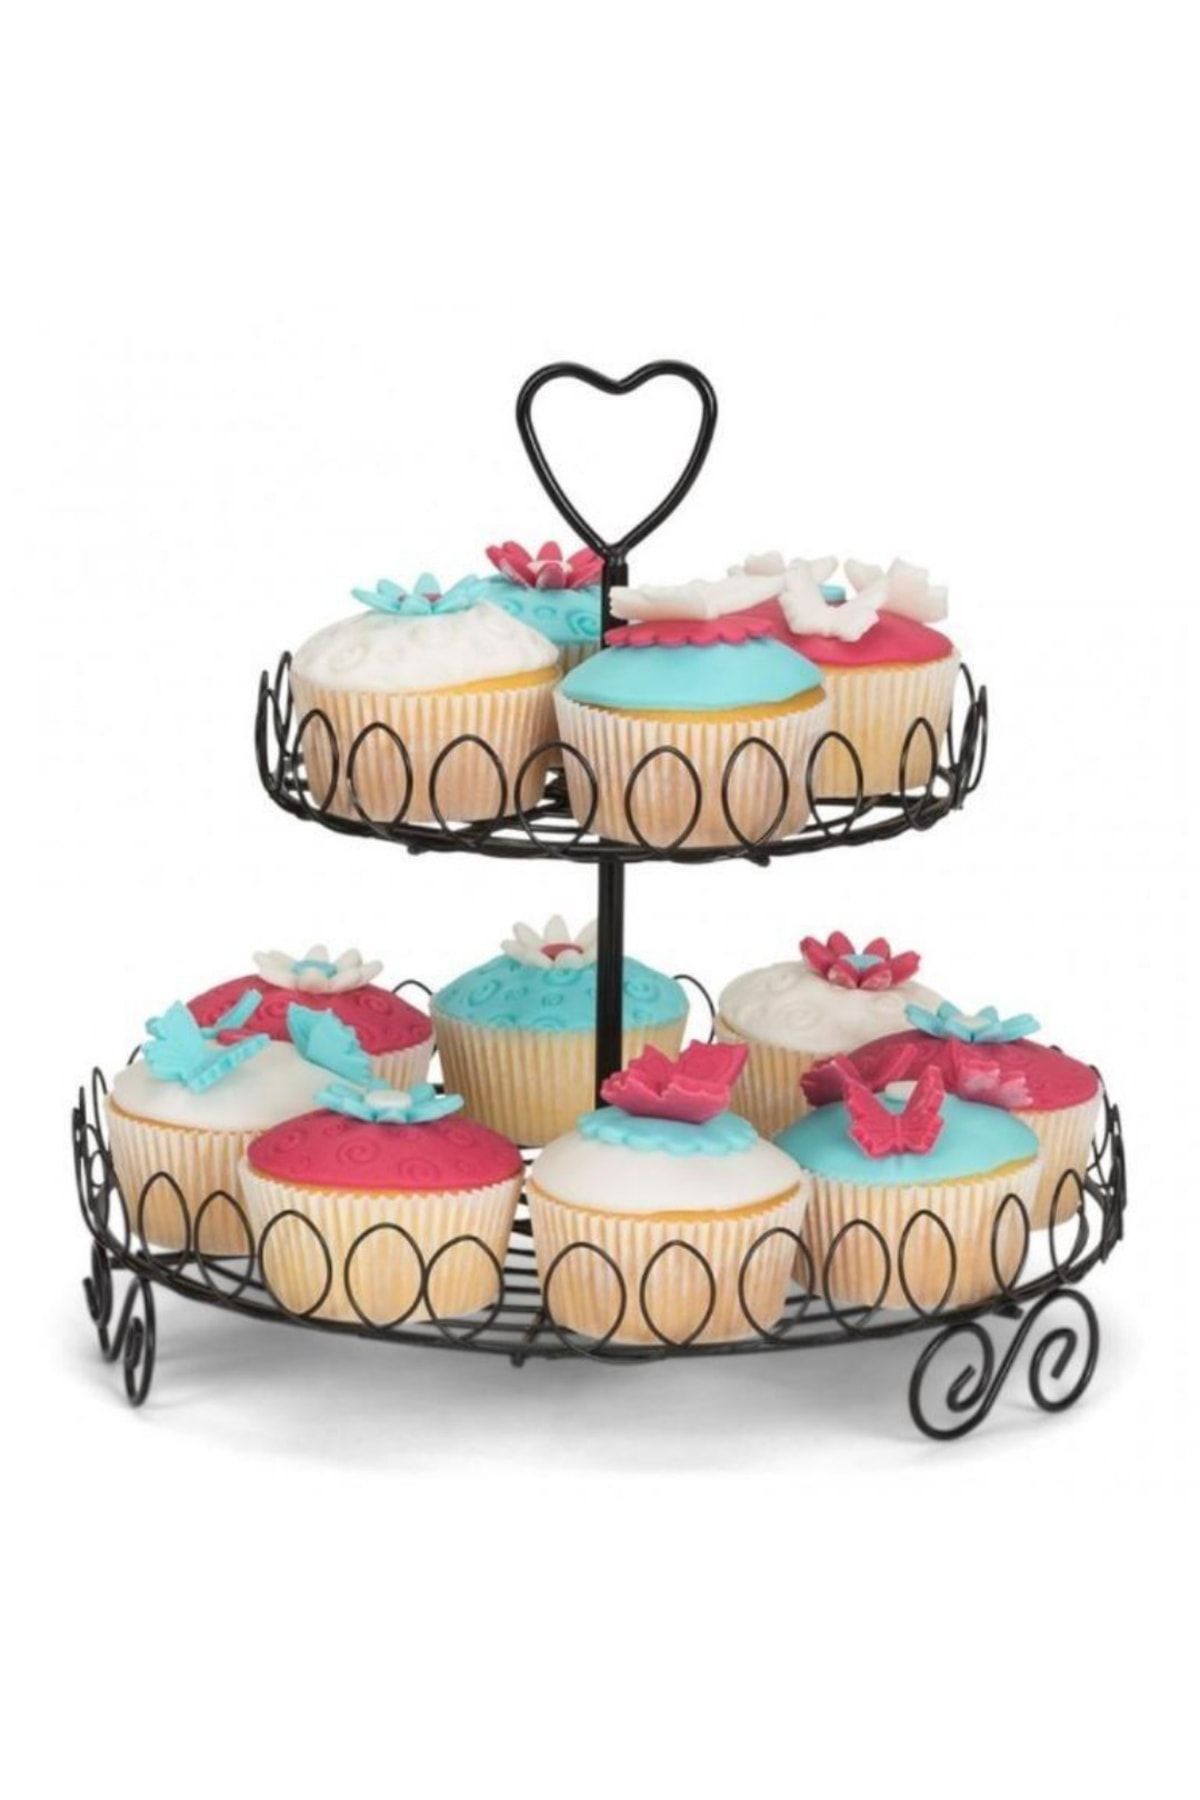 adin tasarım 2 Katlı Muffin Standı Kek Cupcake Standı Popkek Sunum Kek Pasta Kurabiye Sunum Servis Metal Fanus